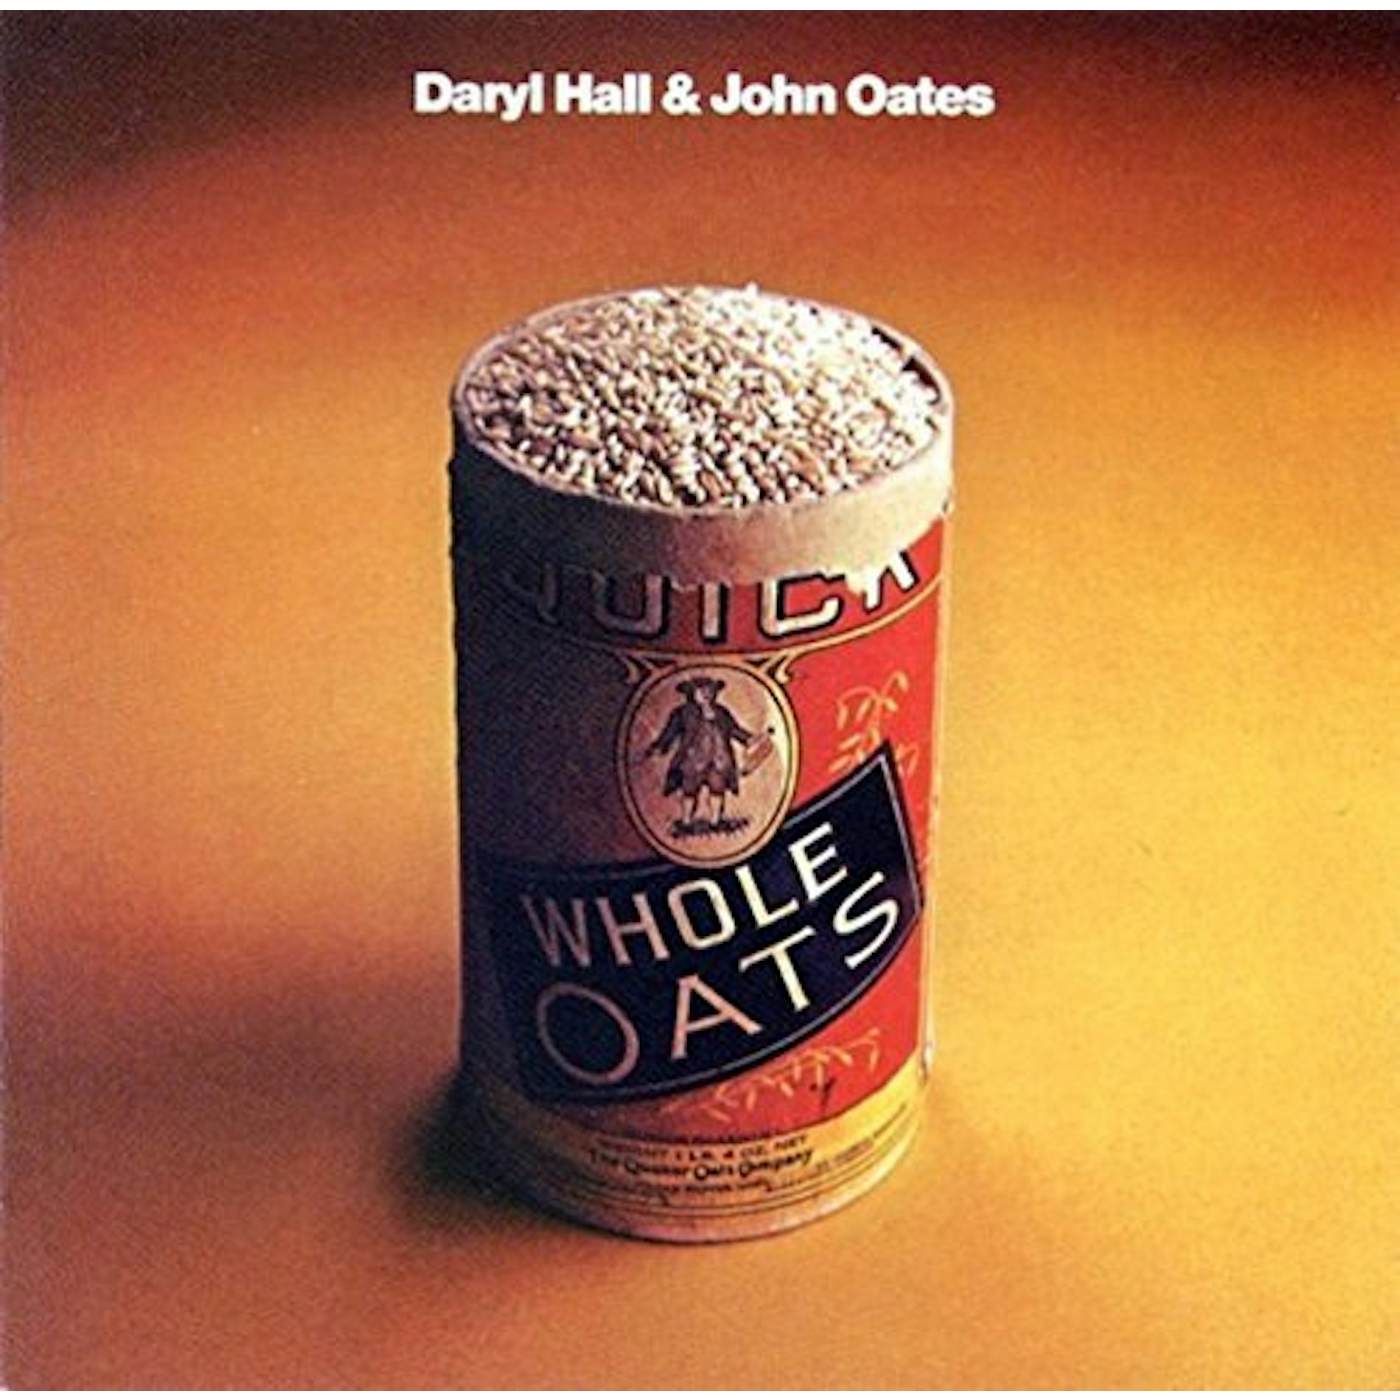 Daryl Hall WHOLE OATS CD